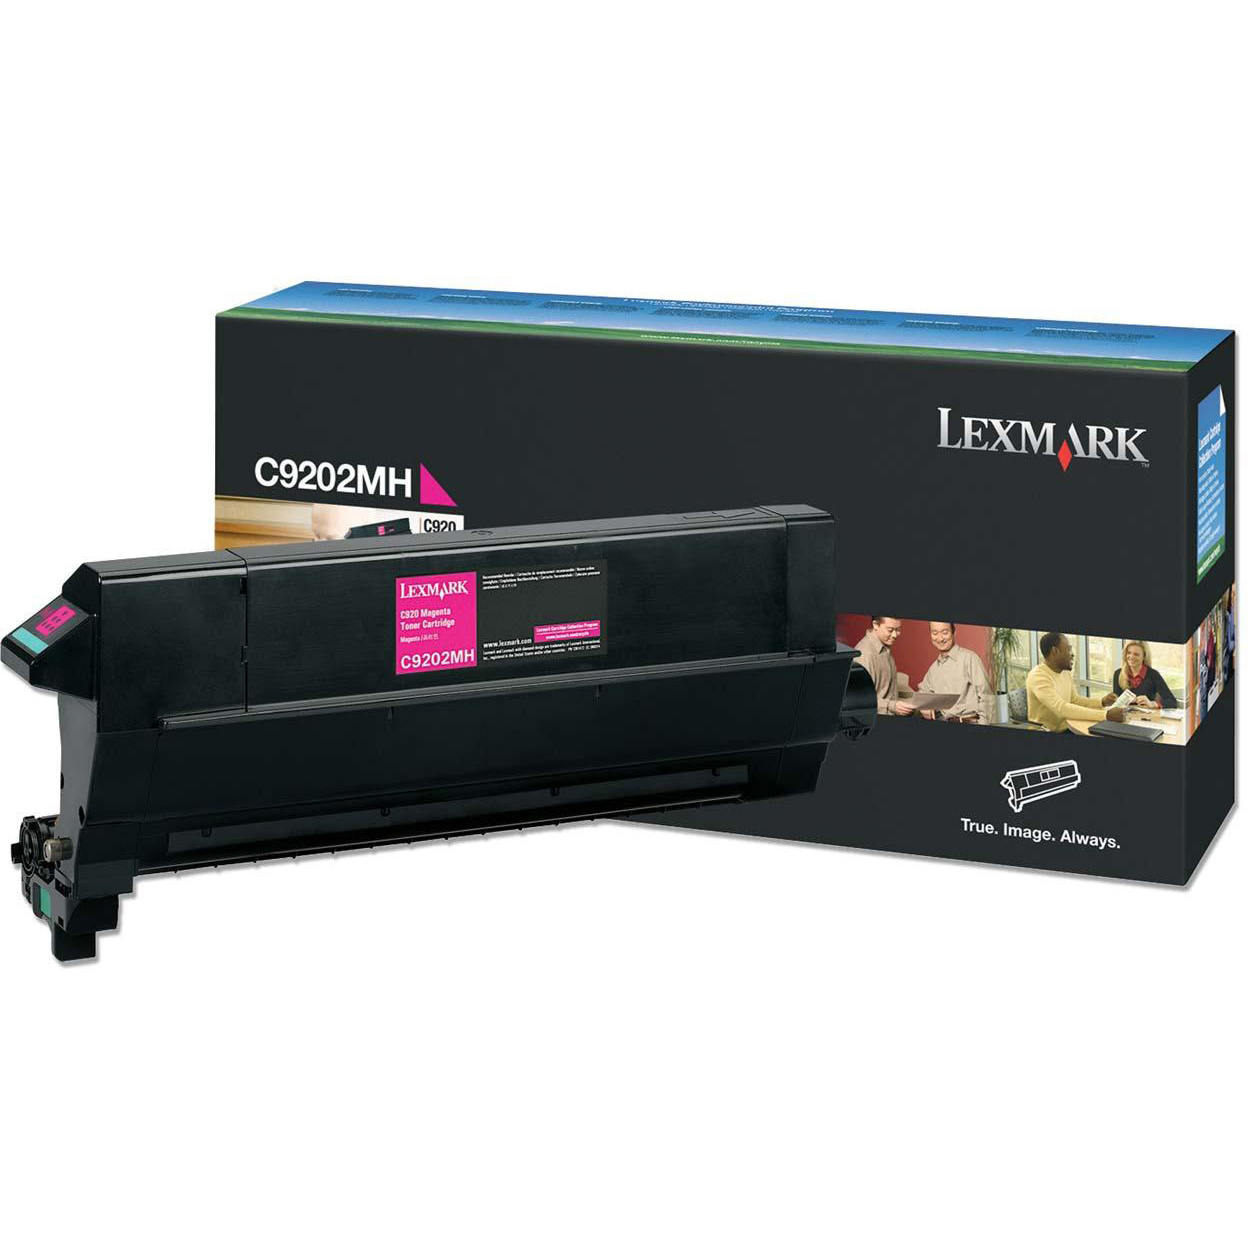 Original Lexmark C9202MH Magenta Toner Cartridge (C9202MH)